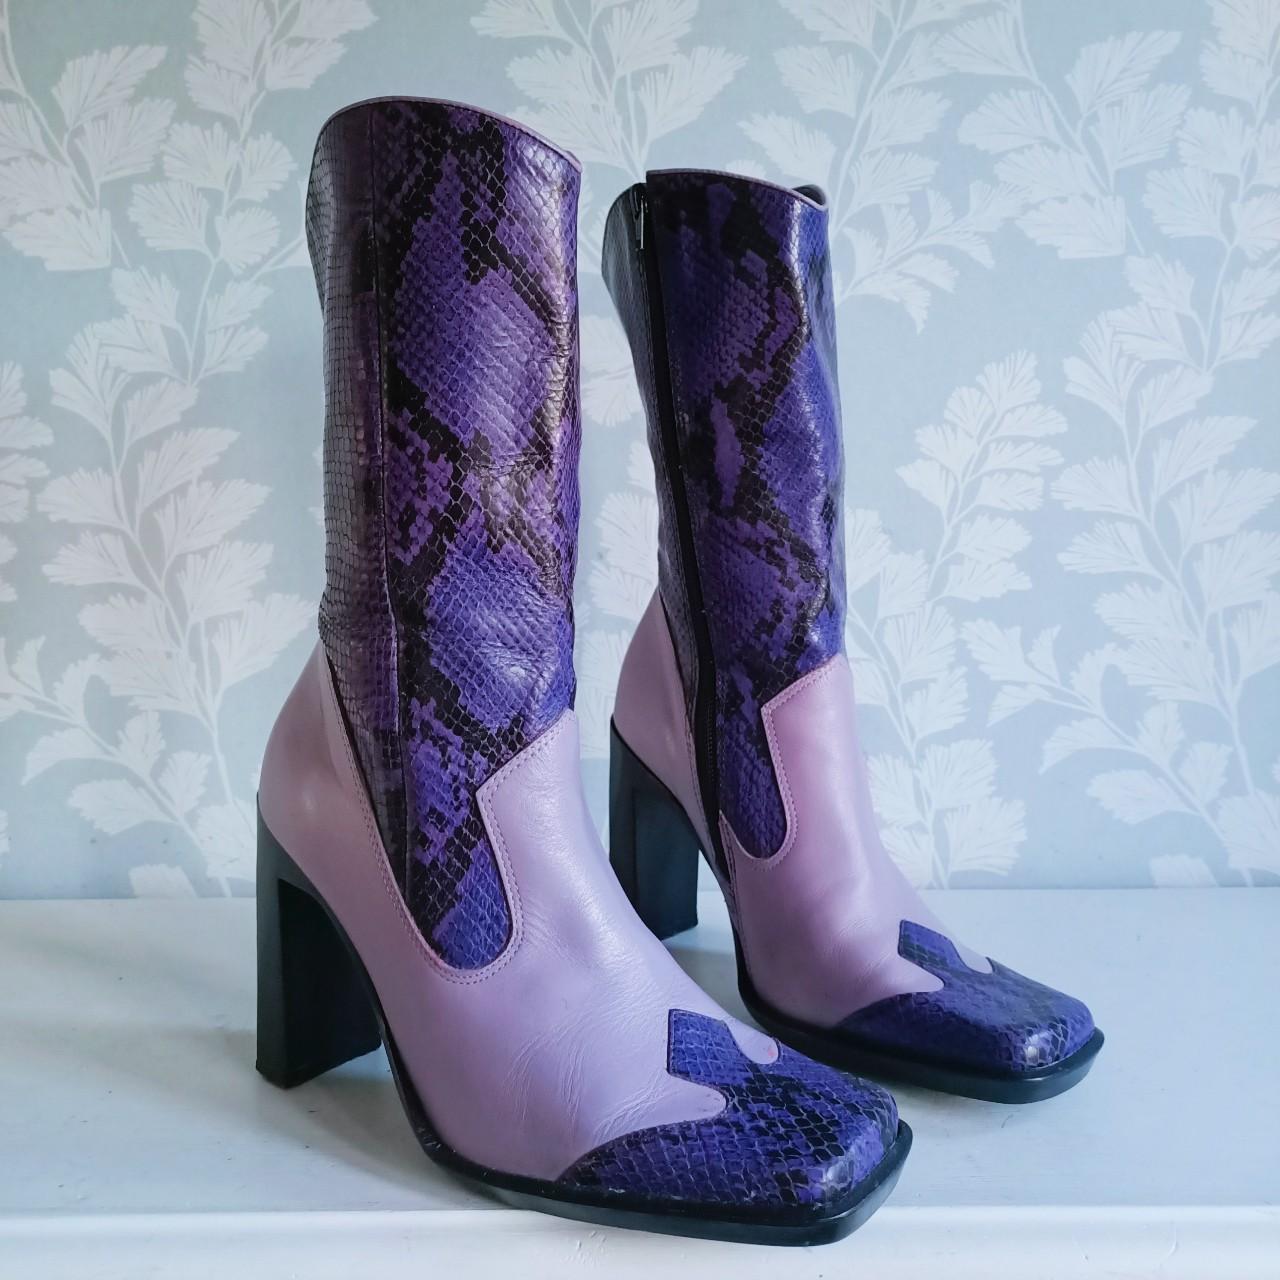 River Island Women's Purple Boots | Depop